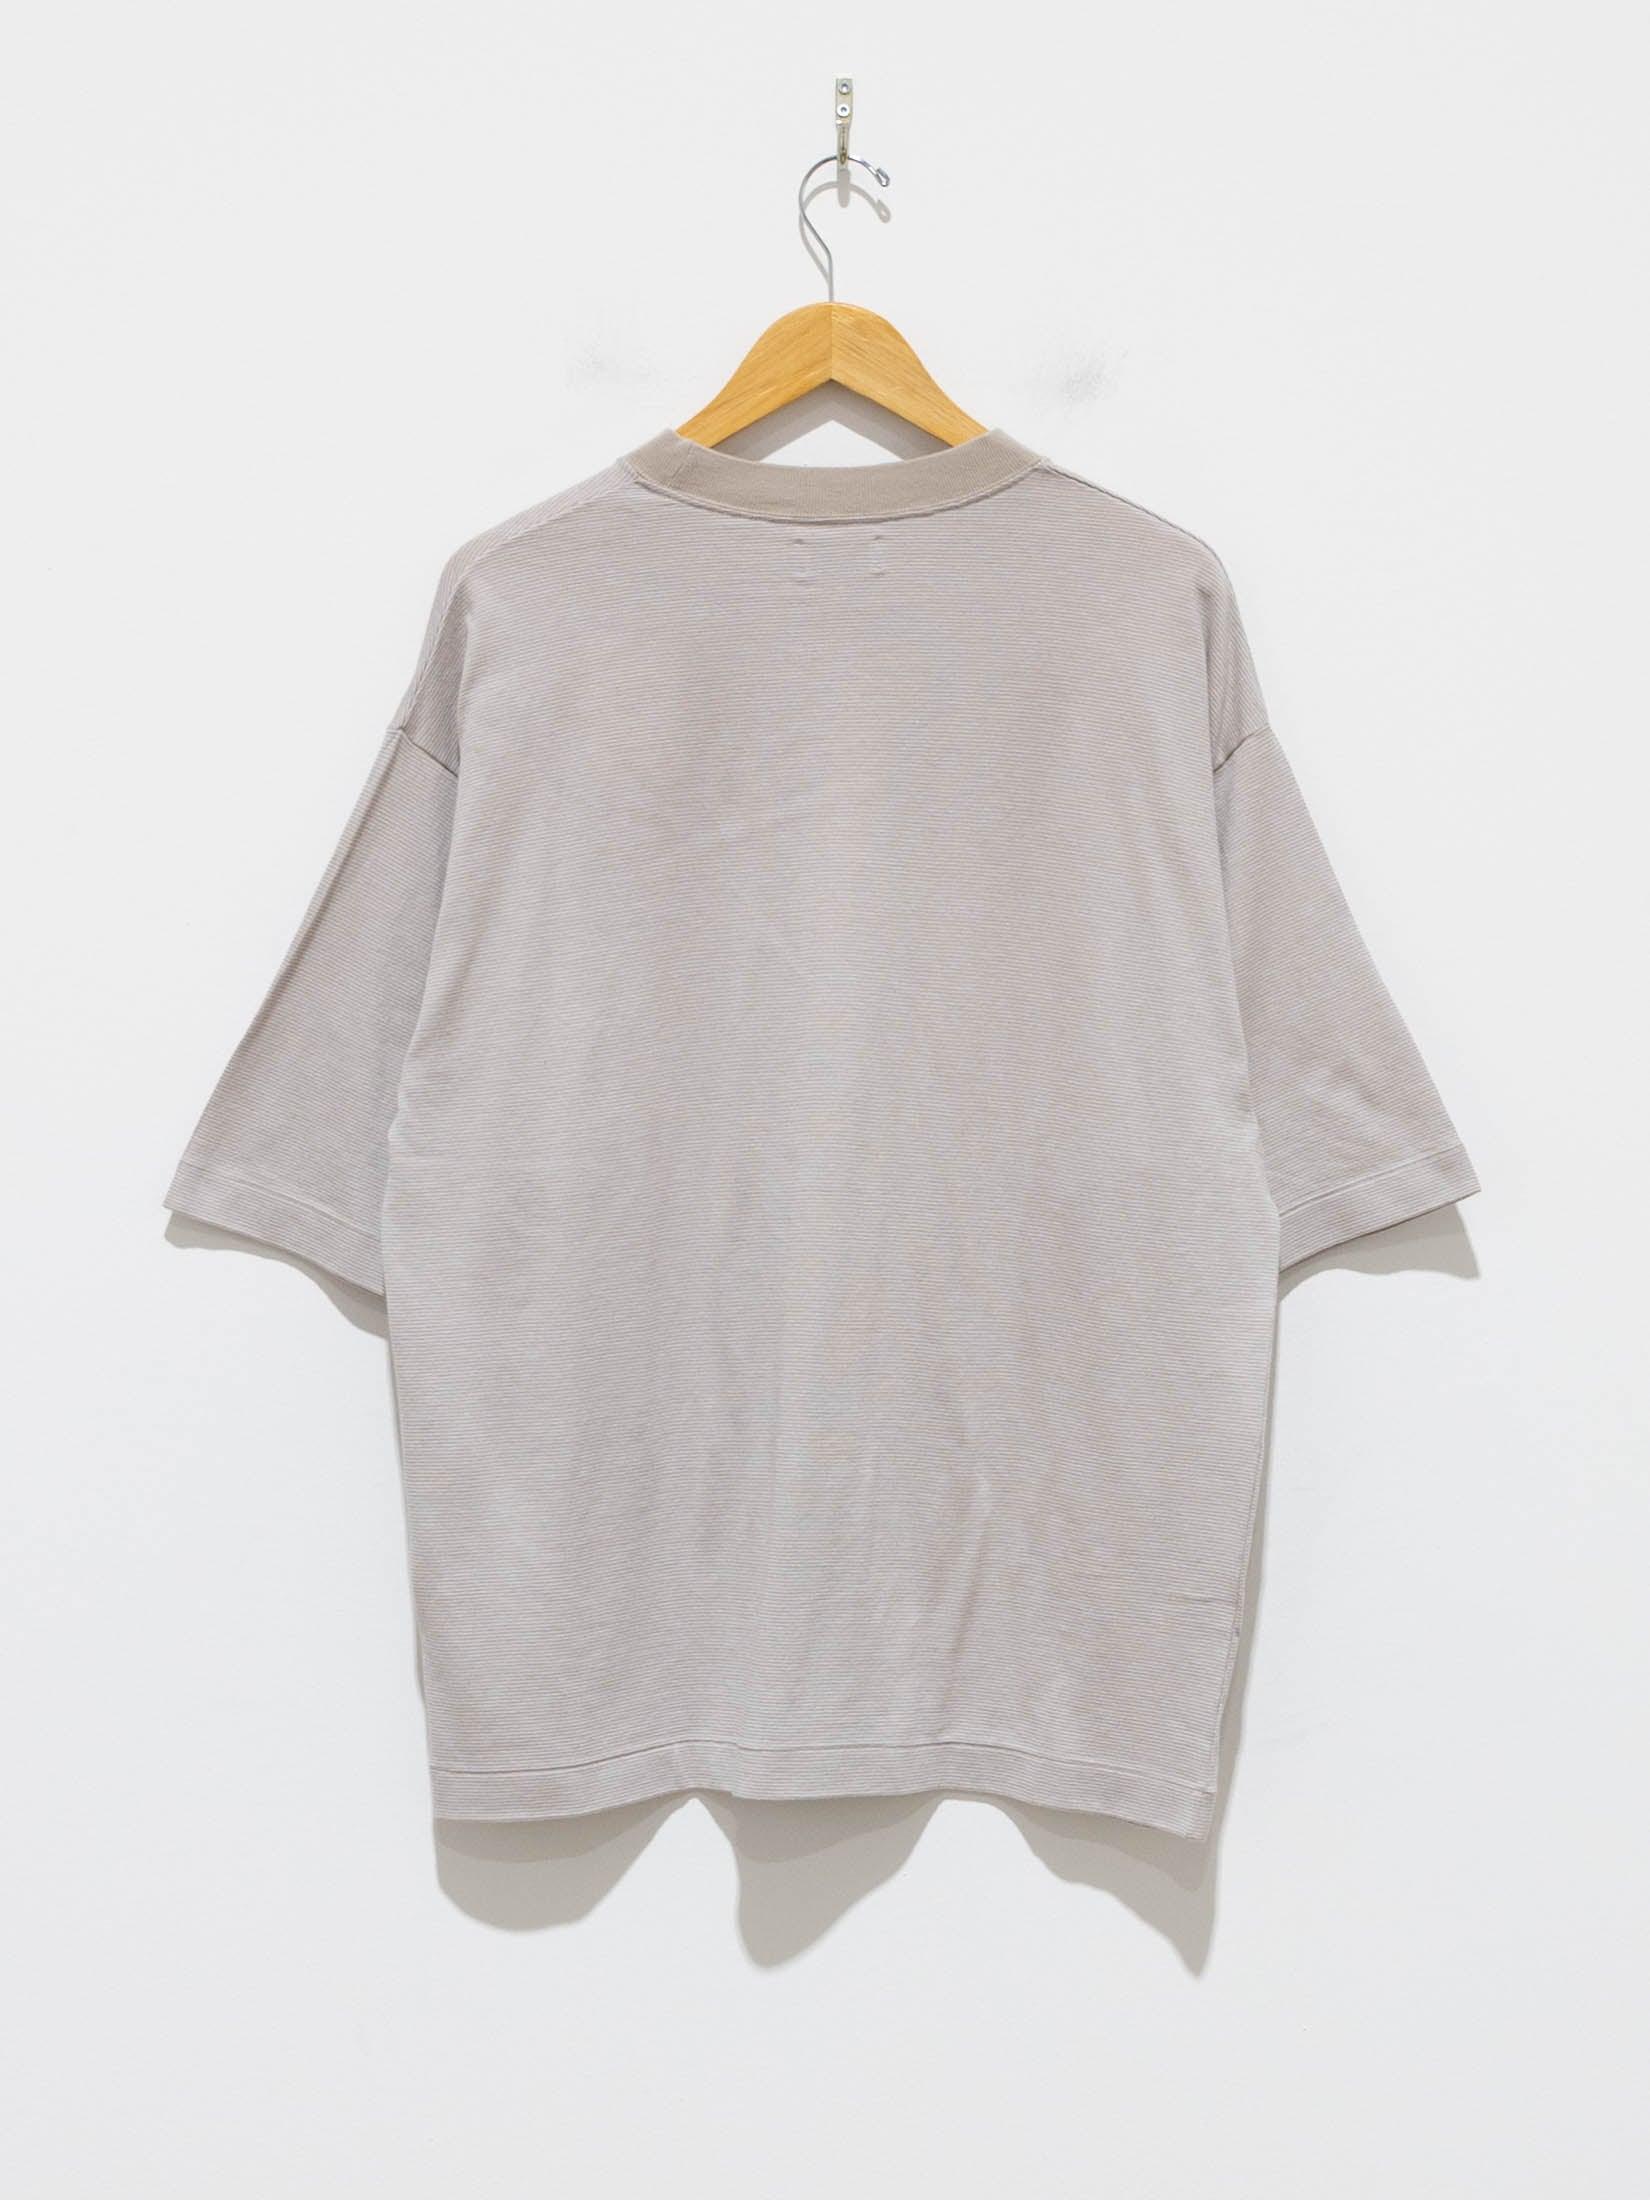 Namu Shop - Phlannel Cotton Linen Links Border T-Shirt - Beige